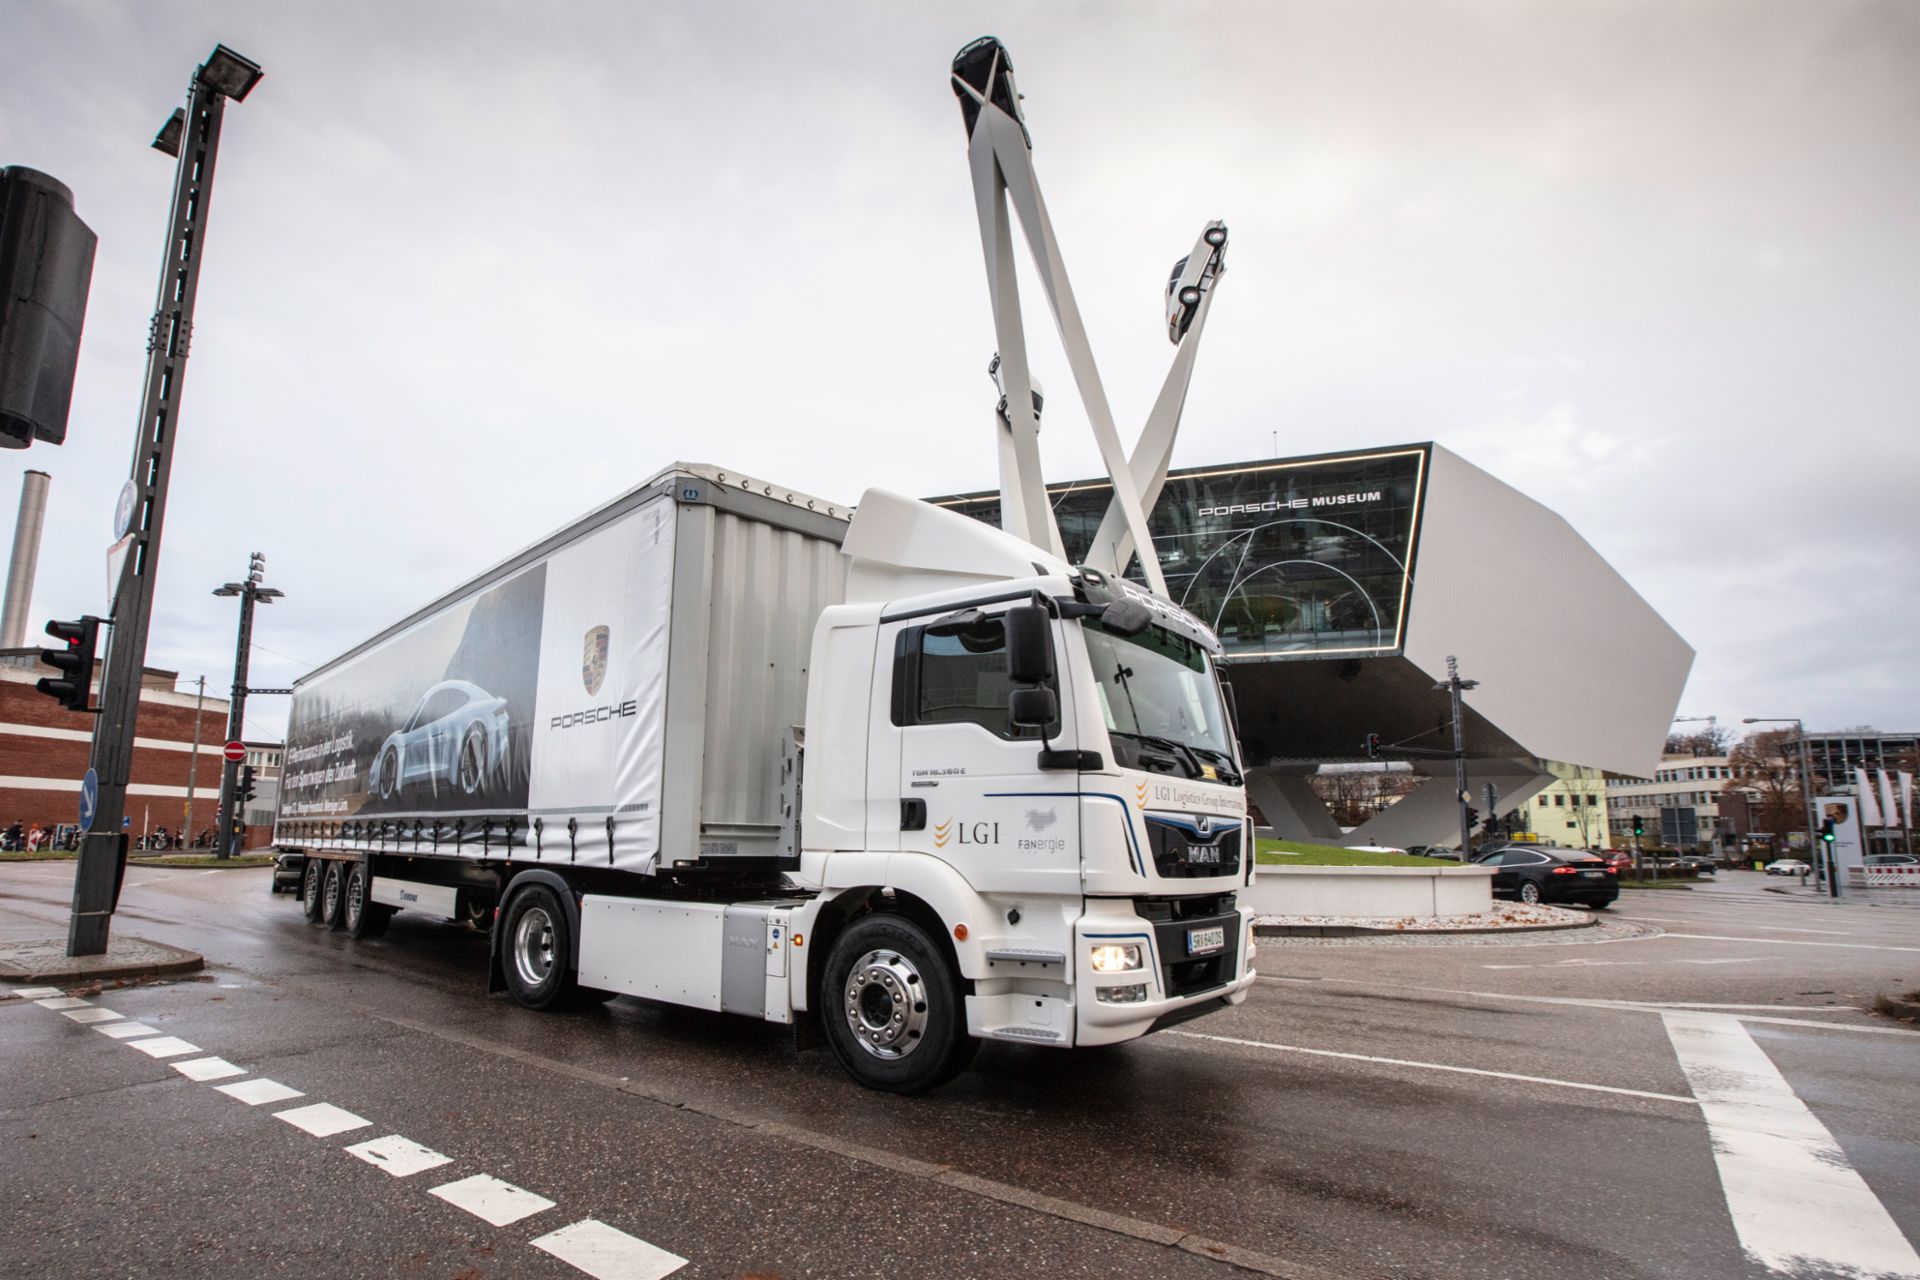 Der MAN eTGM wird im Lieferverkehr zwischen dem Logistik-Partner LGI Logistics Group International GmbH und dem Porsche Werk eingesetzt.